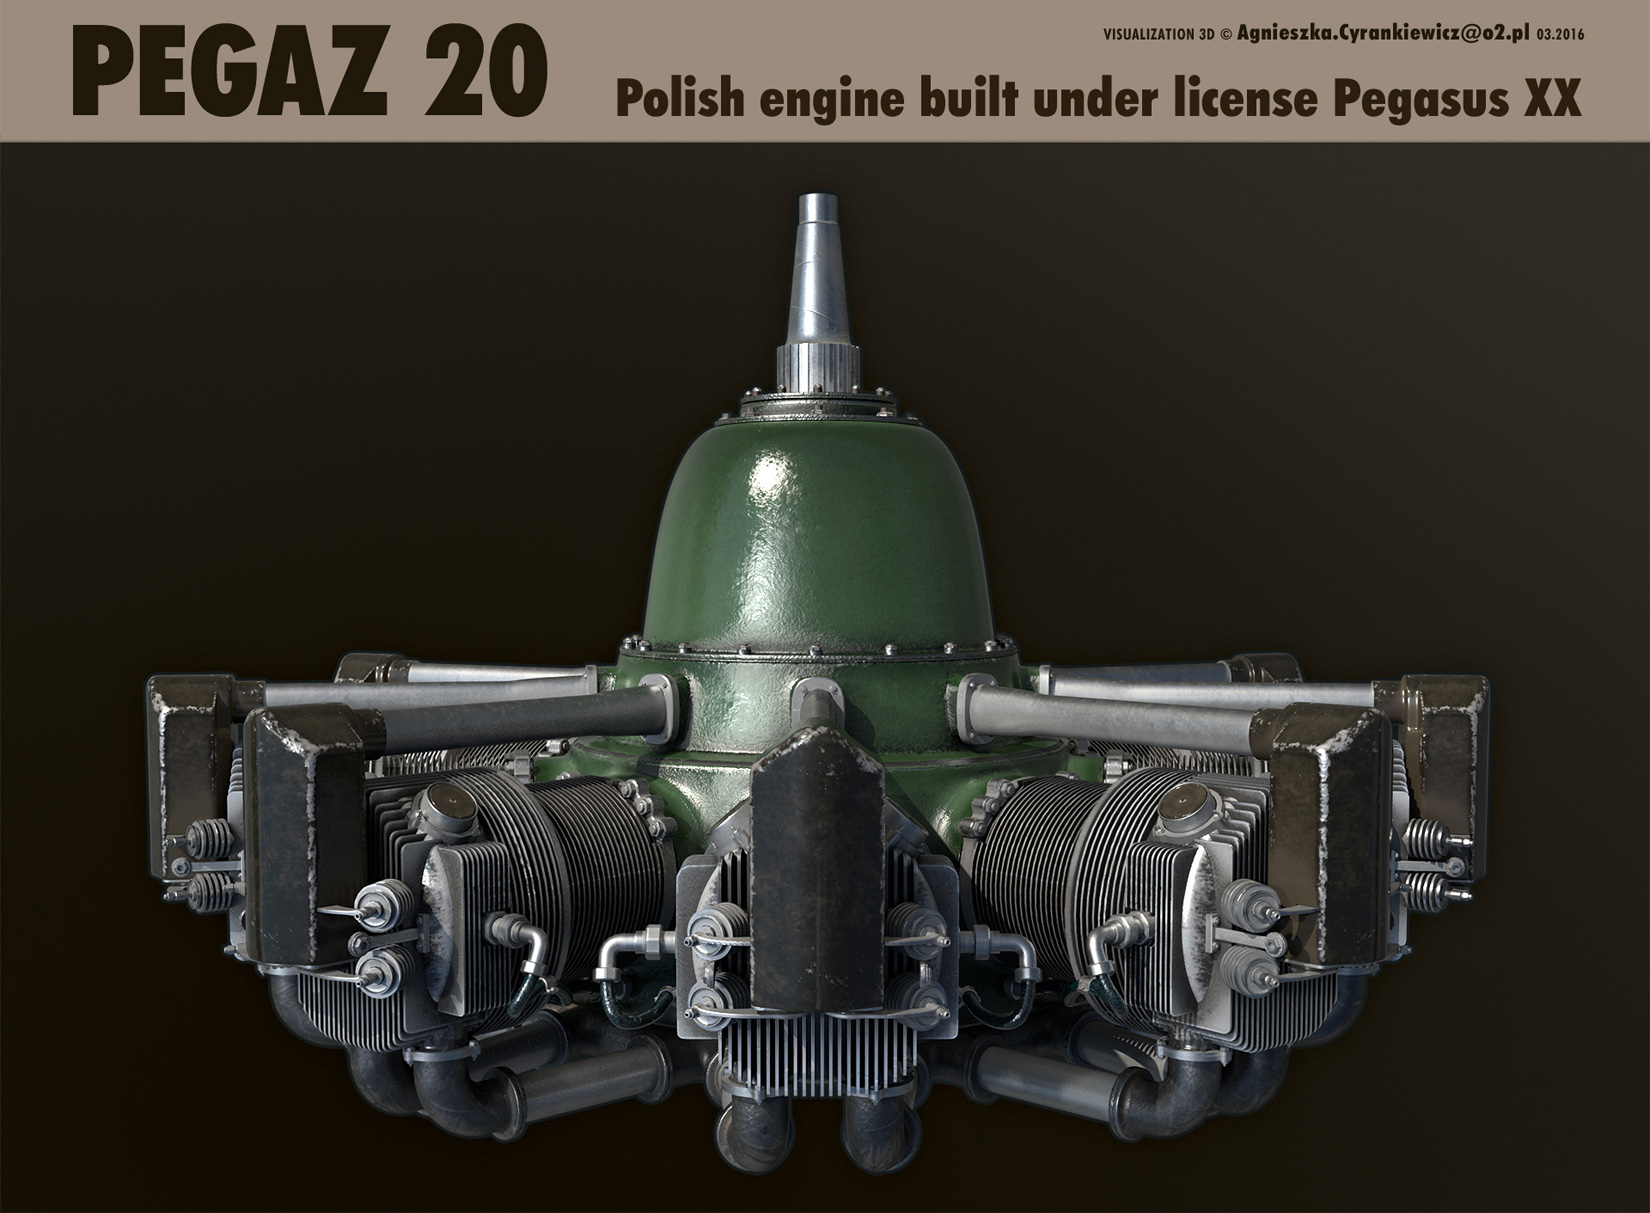 Pegaz 20, Pegasus XX, PZL 37B II, Łoś, WWII, war, 3D, model, render